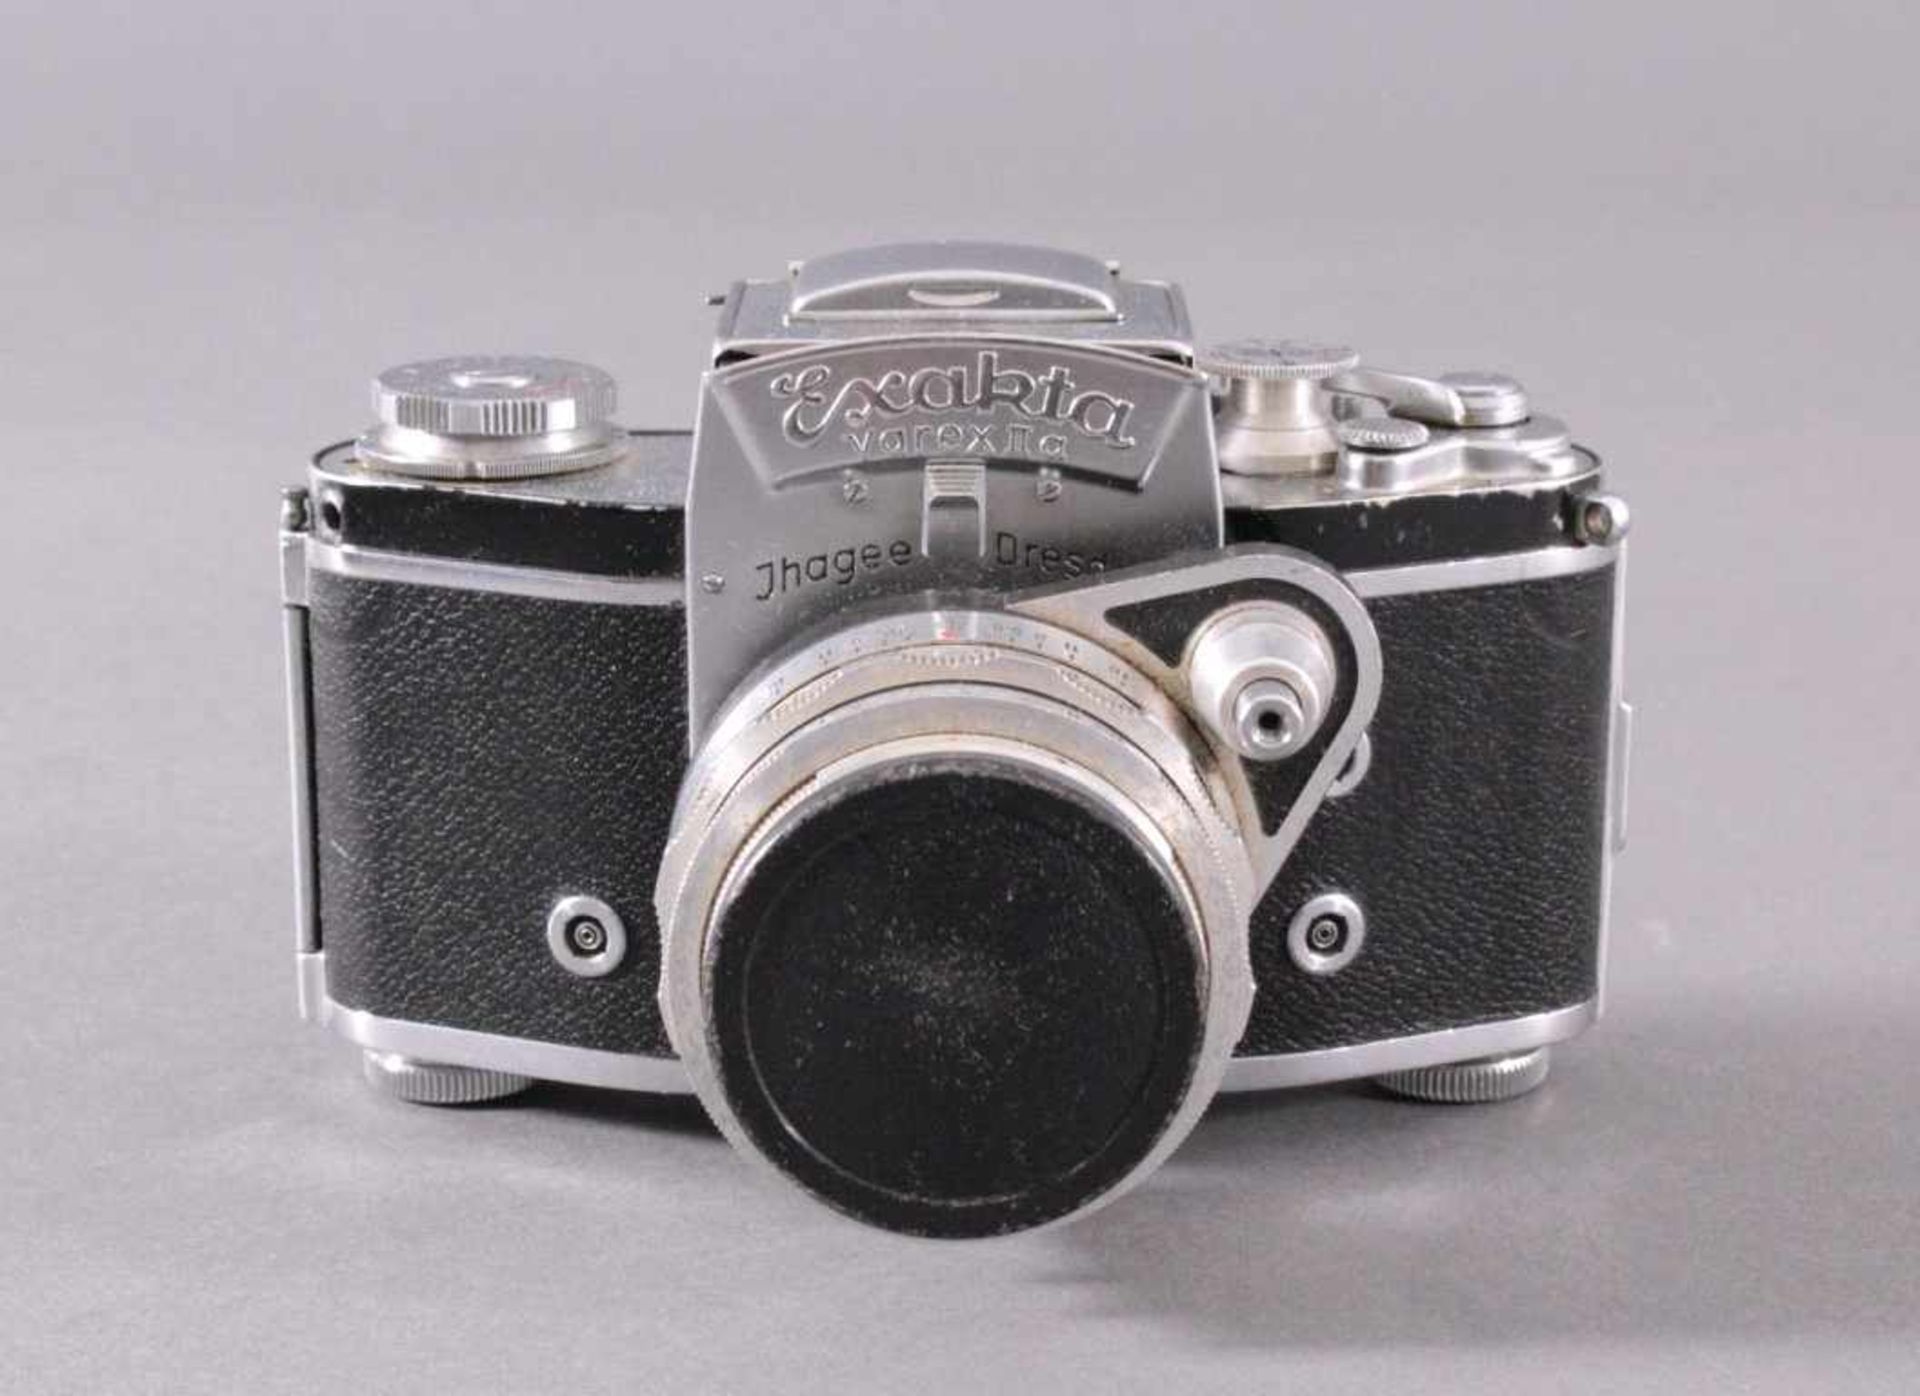 Spiegelreflex-Kamera Exakta Varex IIa. 24x36mm. 1958Ihagee Kamerawerk Dresden, Fabrik-Nummer - Bild 2 aus 4